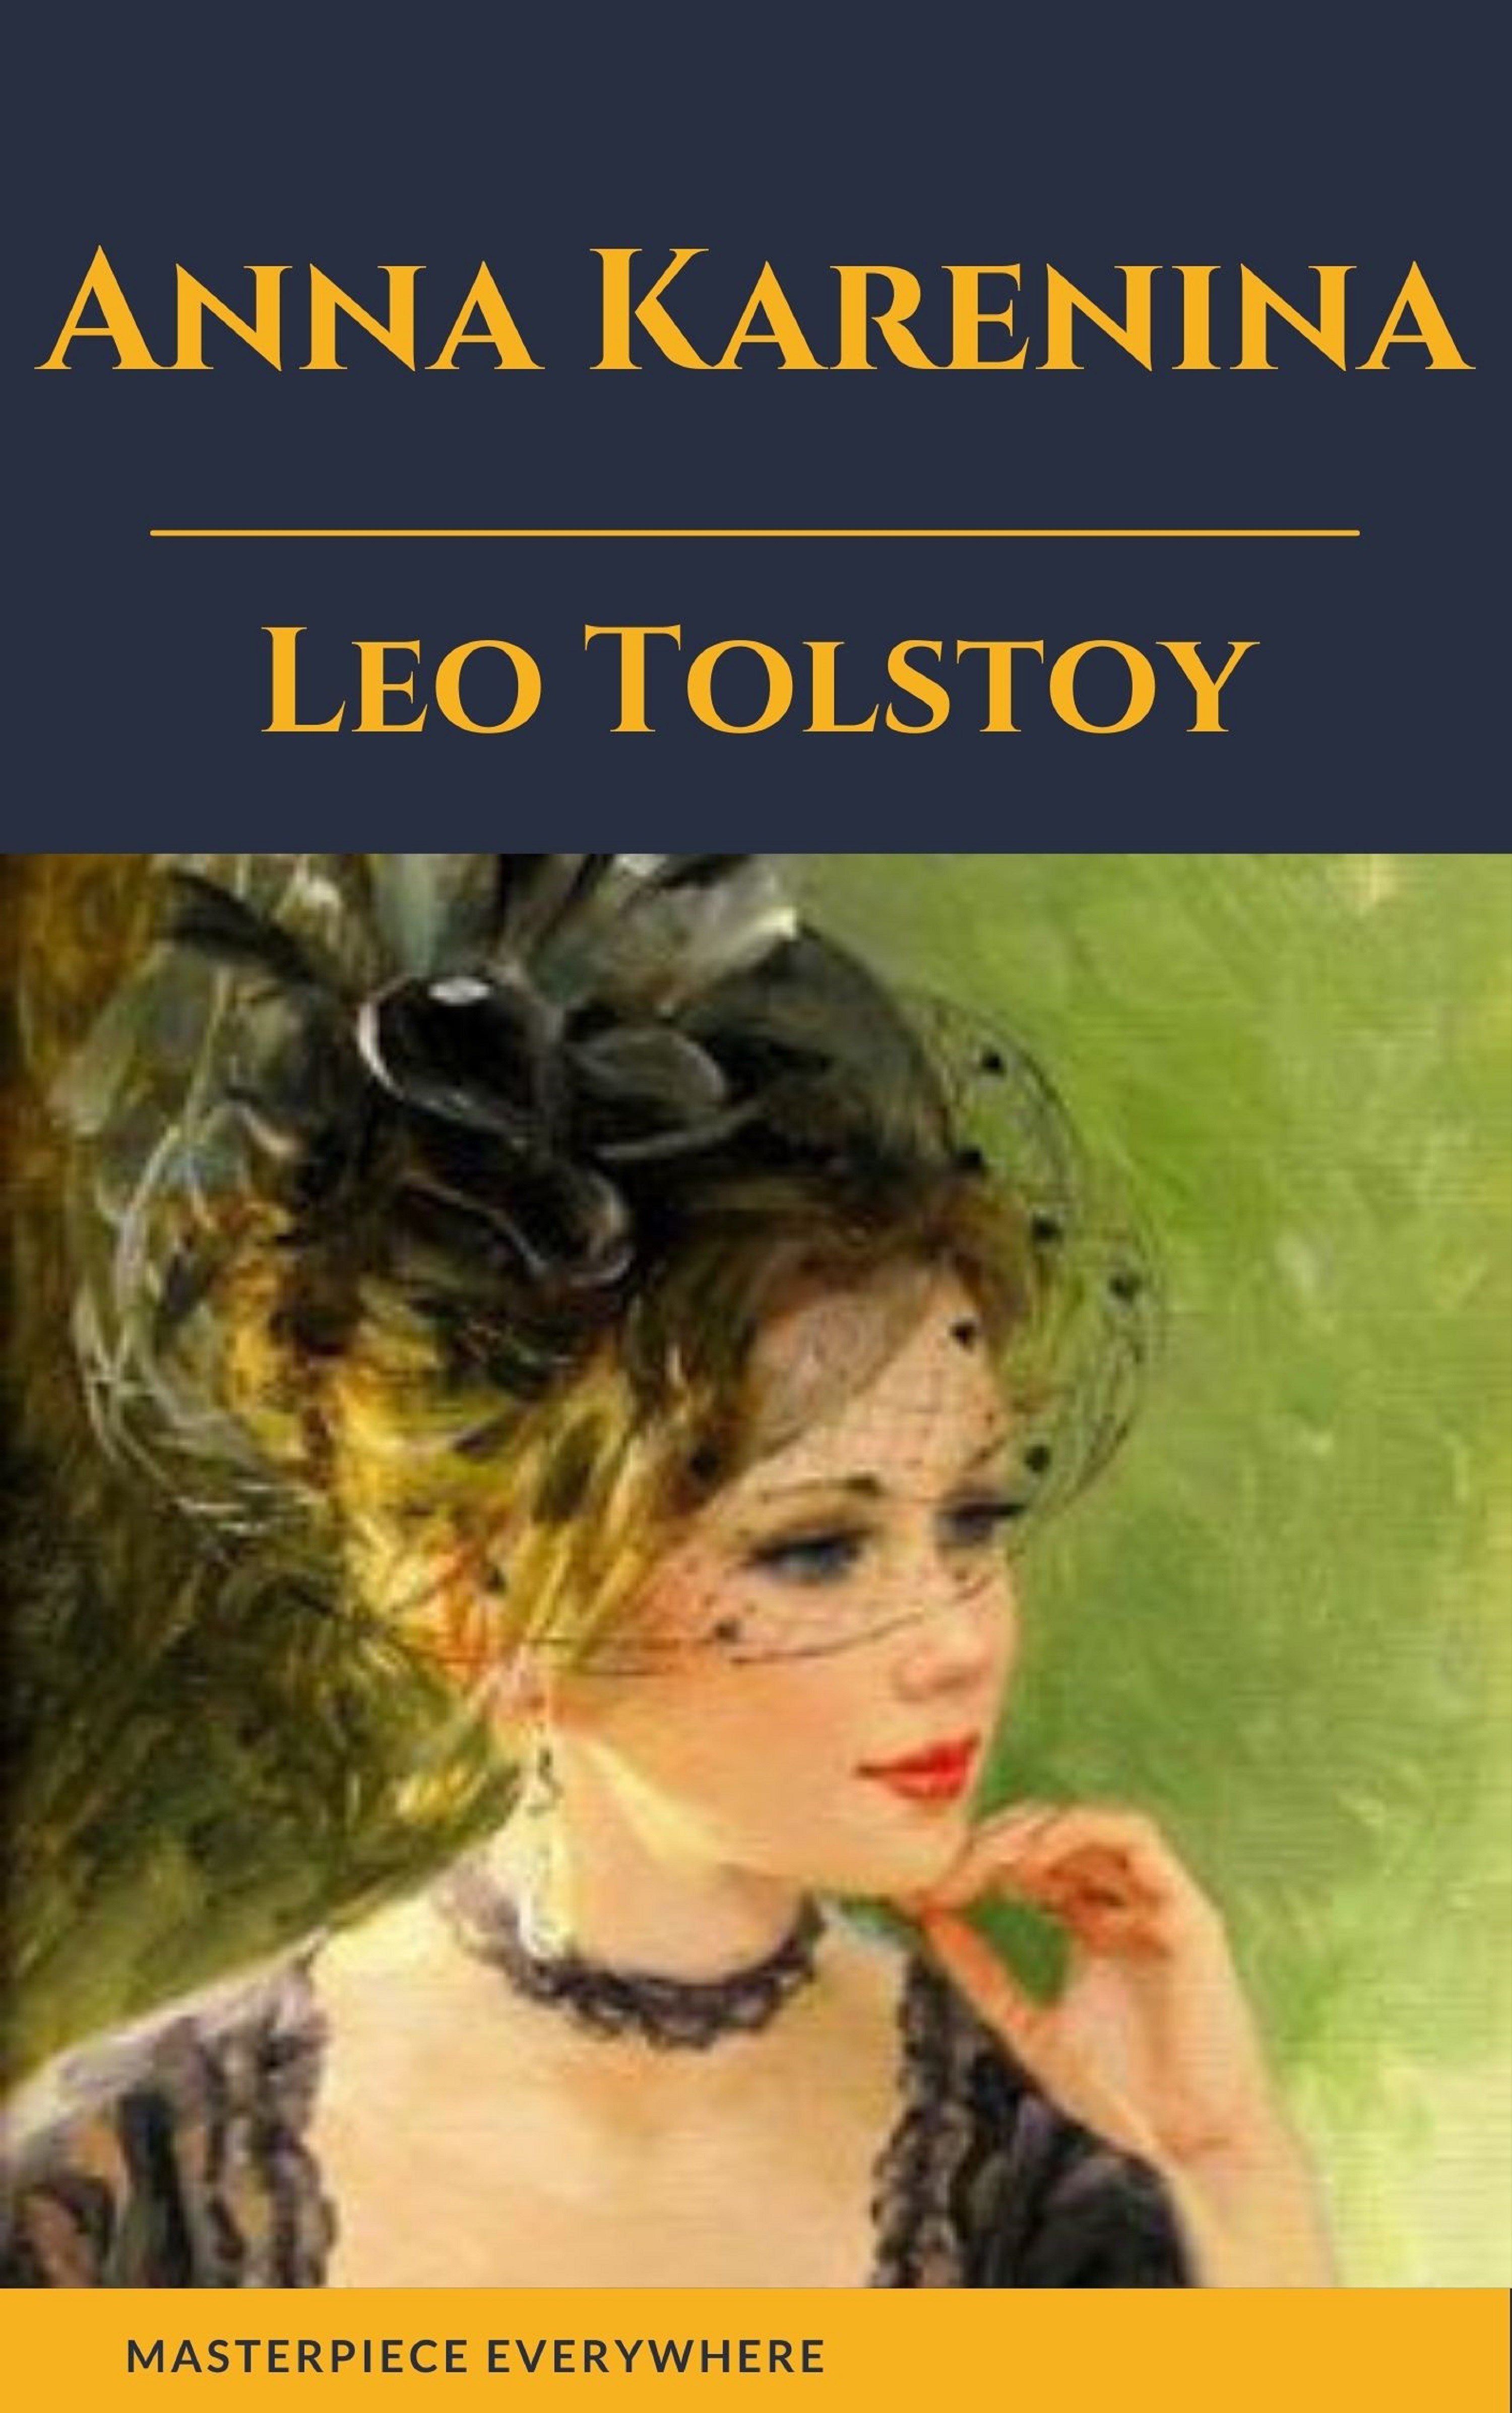 Читать книги анны ковалевой. Tolstoi Leon "Anna Karenine".